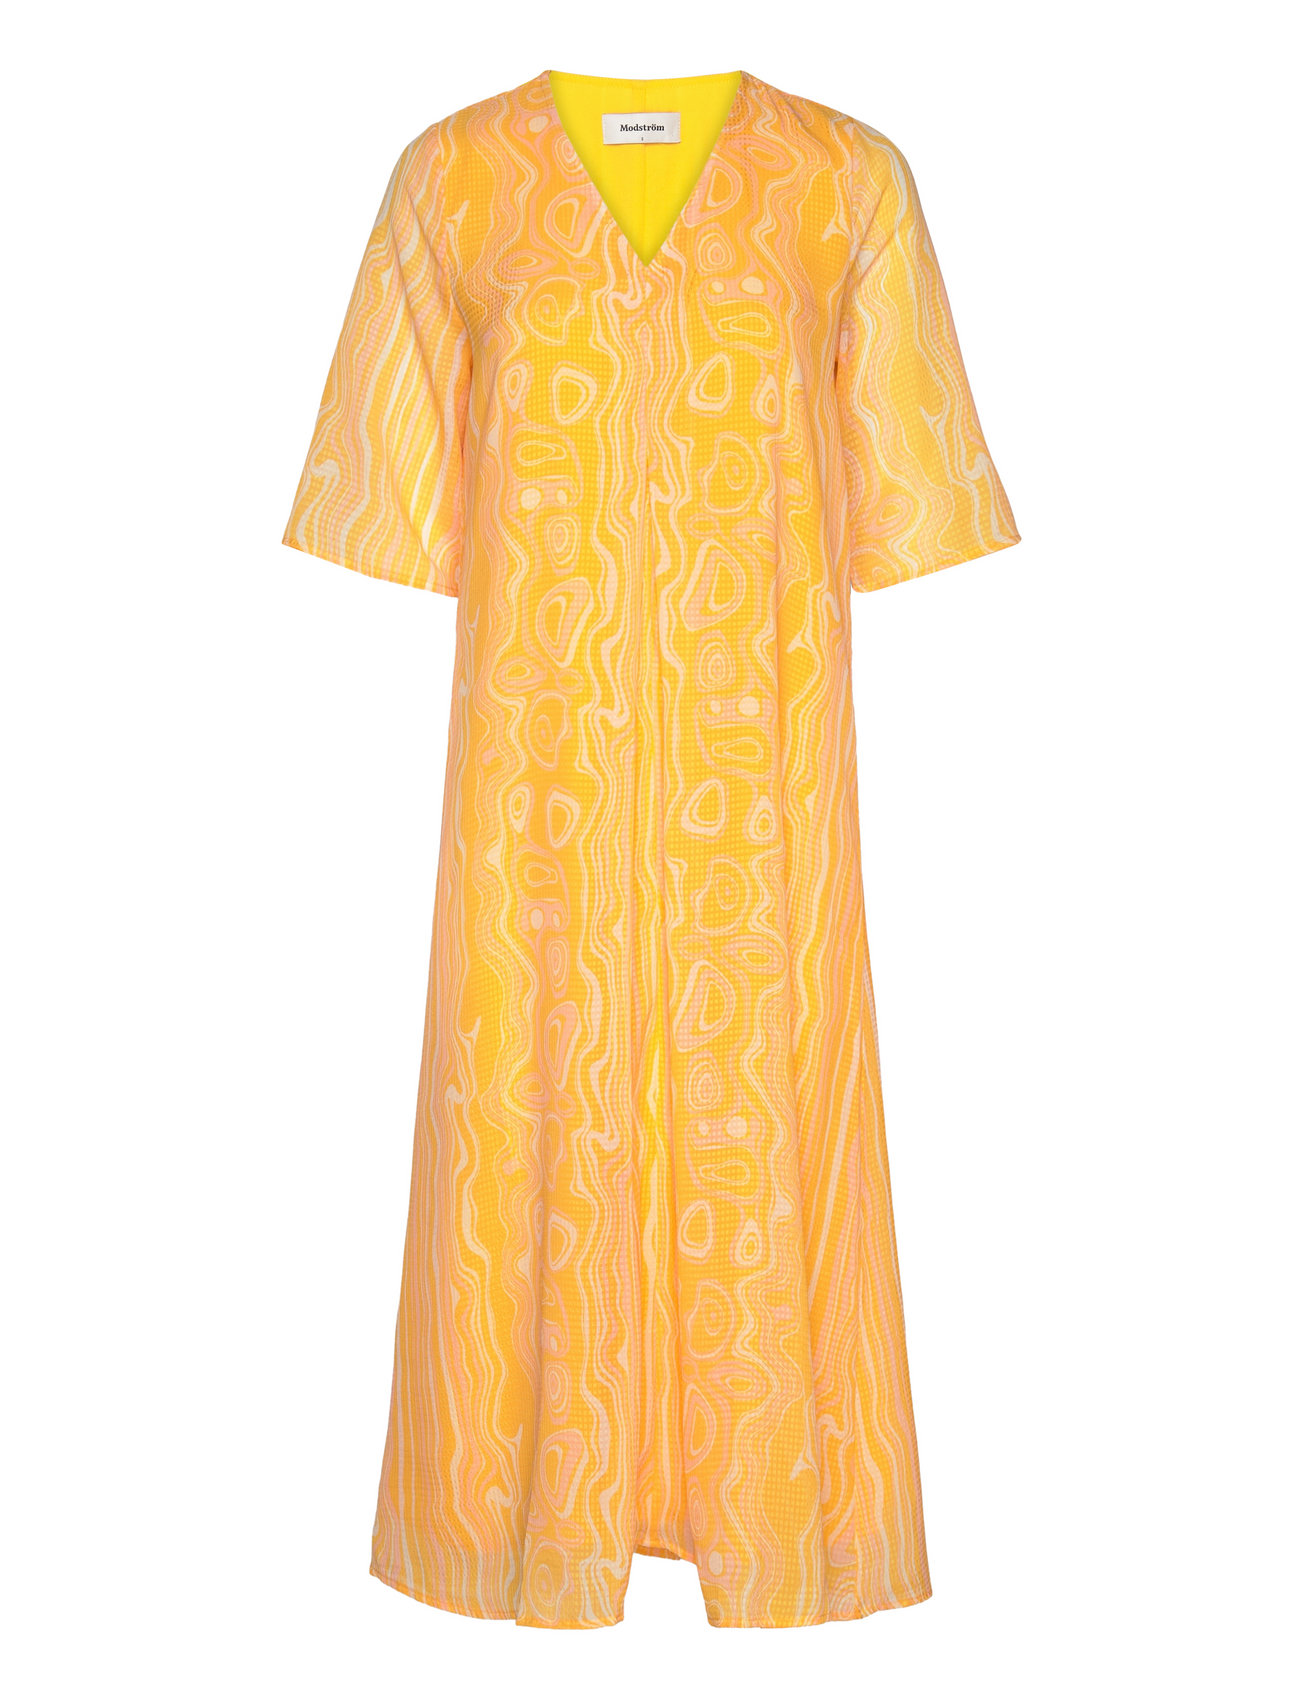 Dontemd Long Print Dress Maxiklänning Festklänning Orange Modström